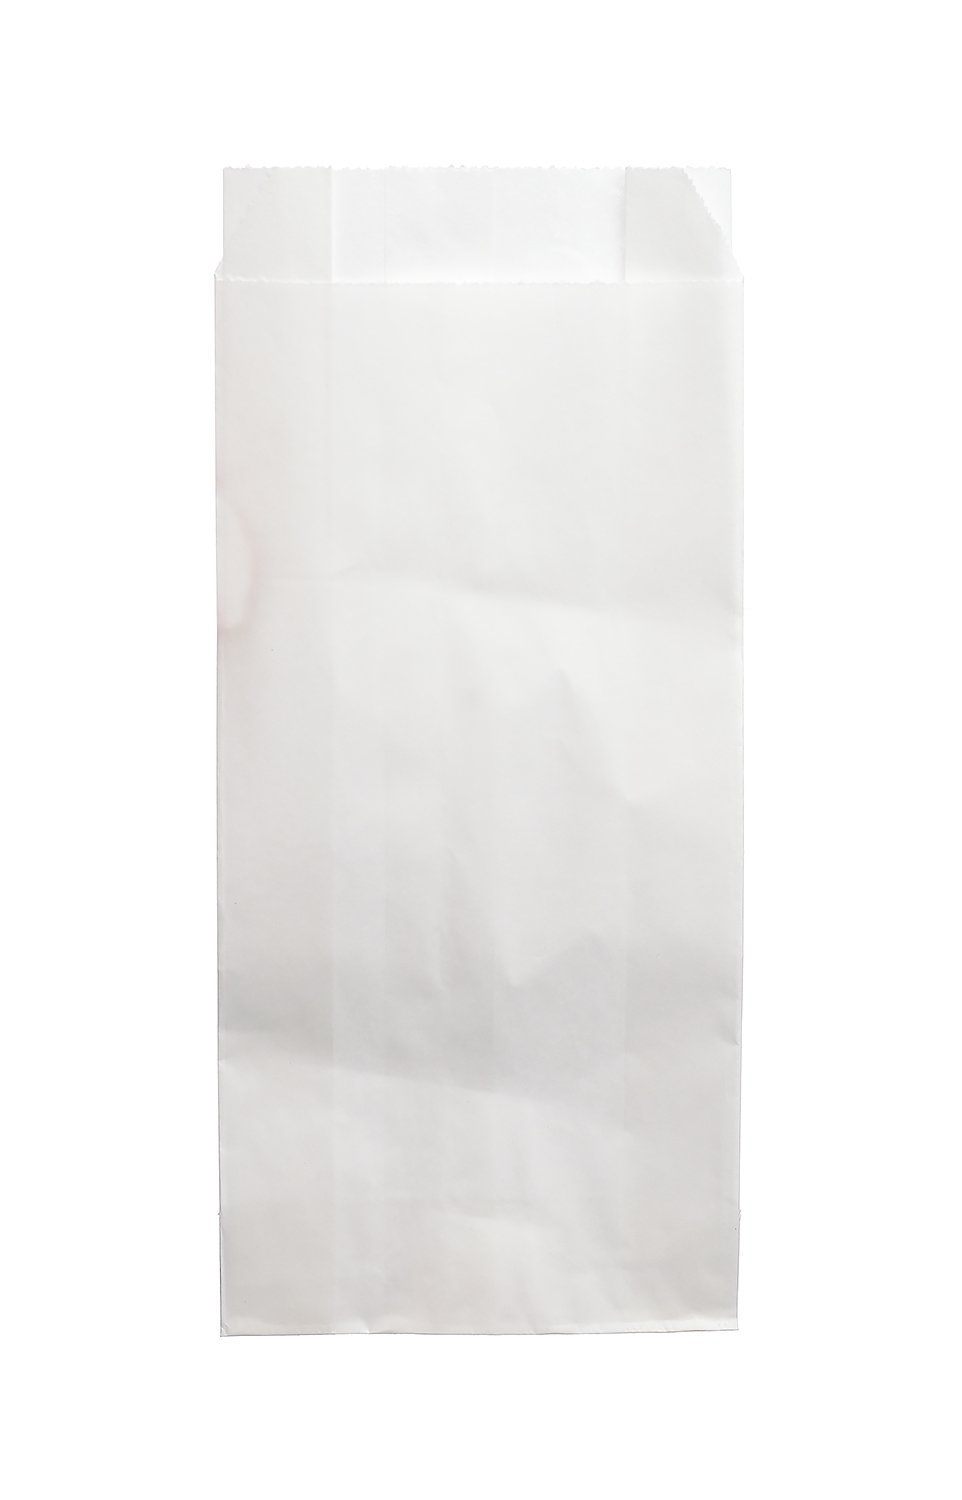 Бумажный пакет с прямоугольным дном подходит для упаковки легких покупок, а также сохранить окружающую среду, благодаря использованию экологически чистых материалов. Размер пакета 90х40х205 мм. Изготовлен из бумаги марки ОДП. Плотность бумаги 40 г/м2. Цвет белый. В упаковке 1600 штук.